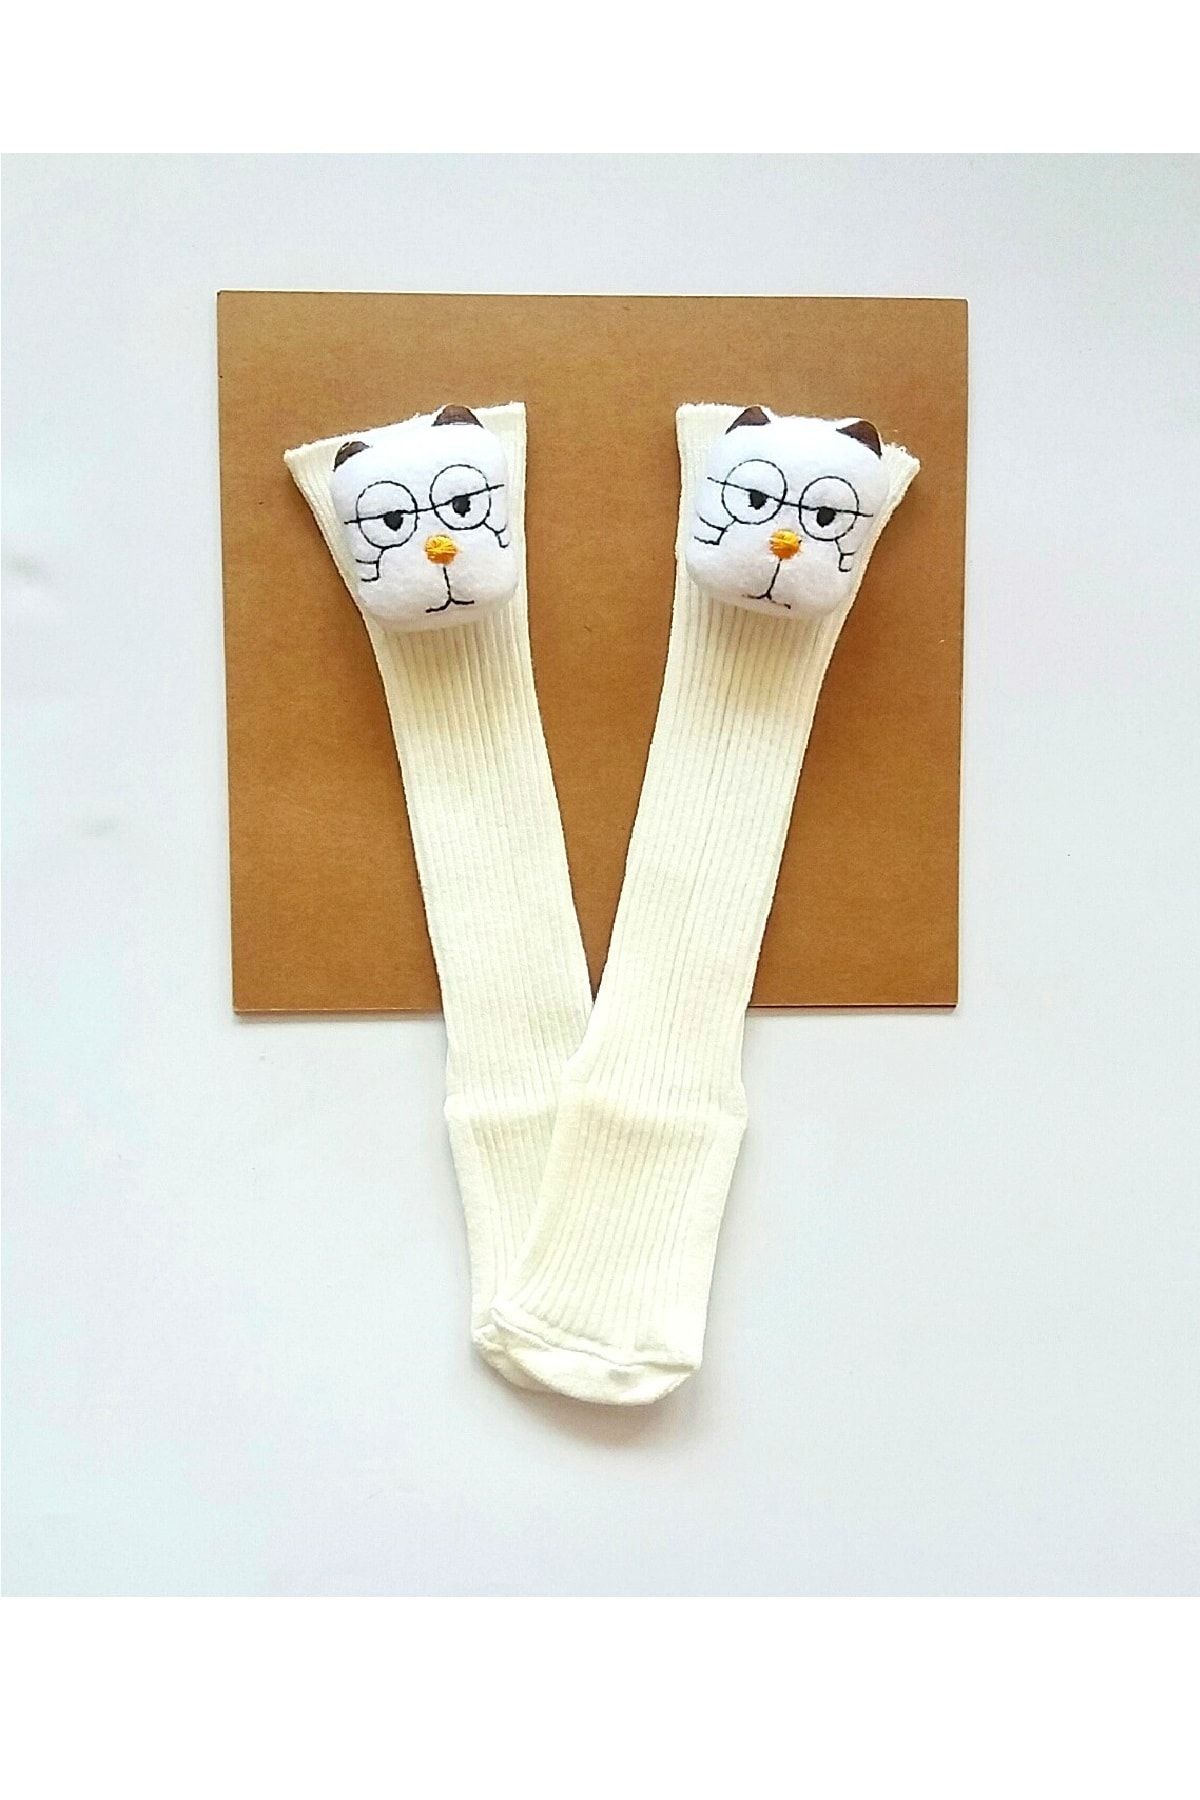 Asa Bebek Çocuk Kız Erkek Bebek Oyuncak Figürlü Diz Altı Çorap Bebek Dizaltı Çorapları